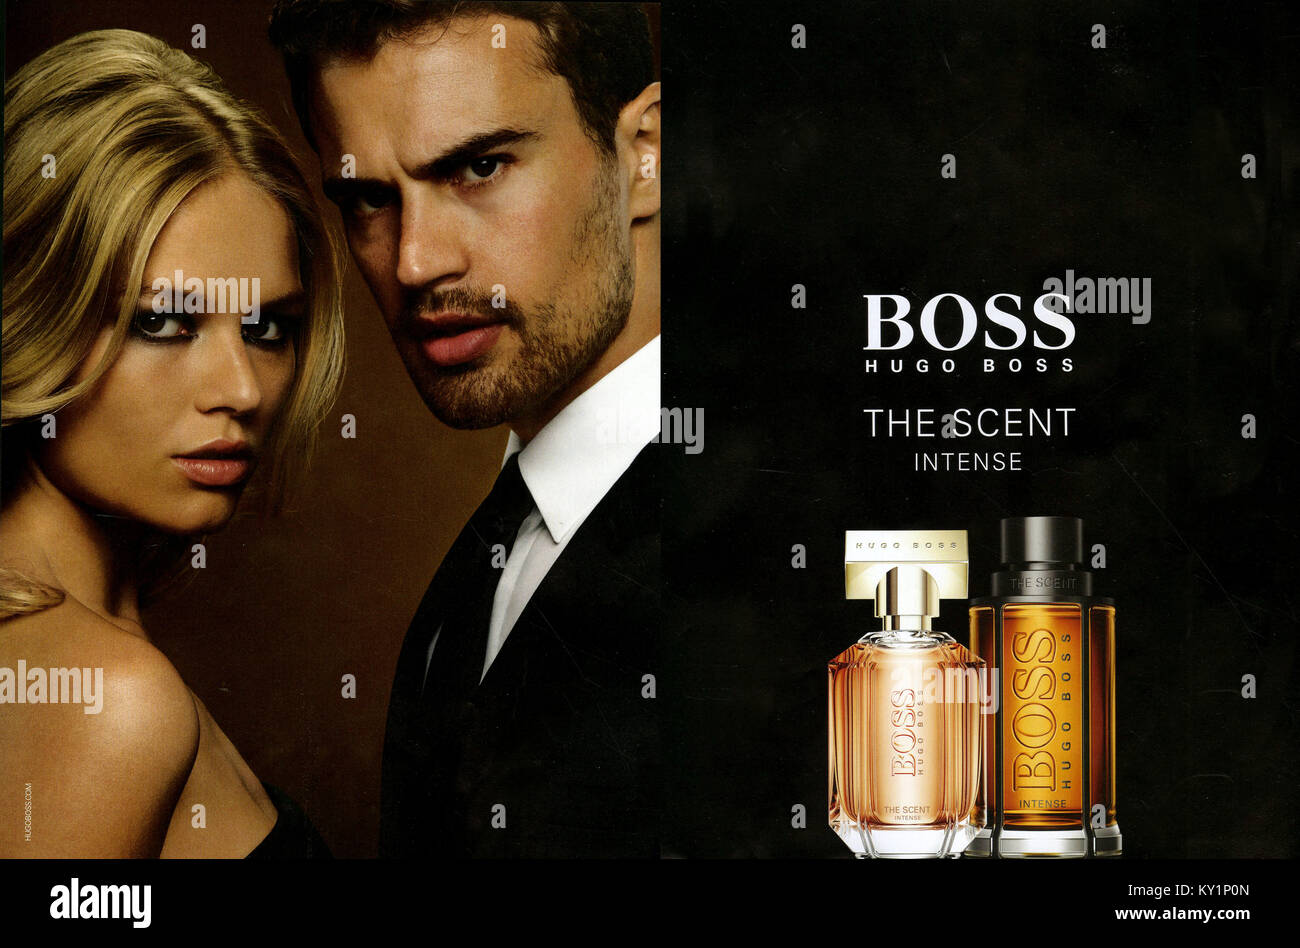 Hugo Boss Perfume Immagini e Fotos Stock - Alamy